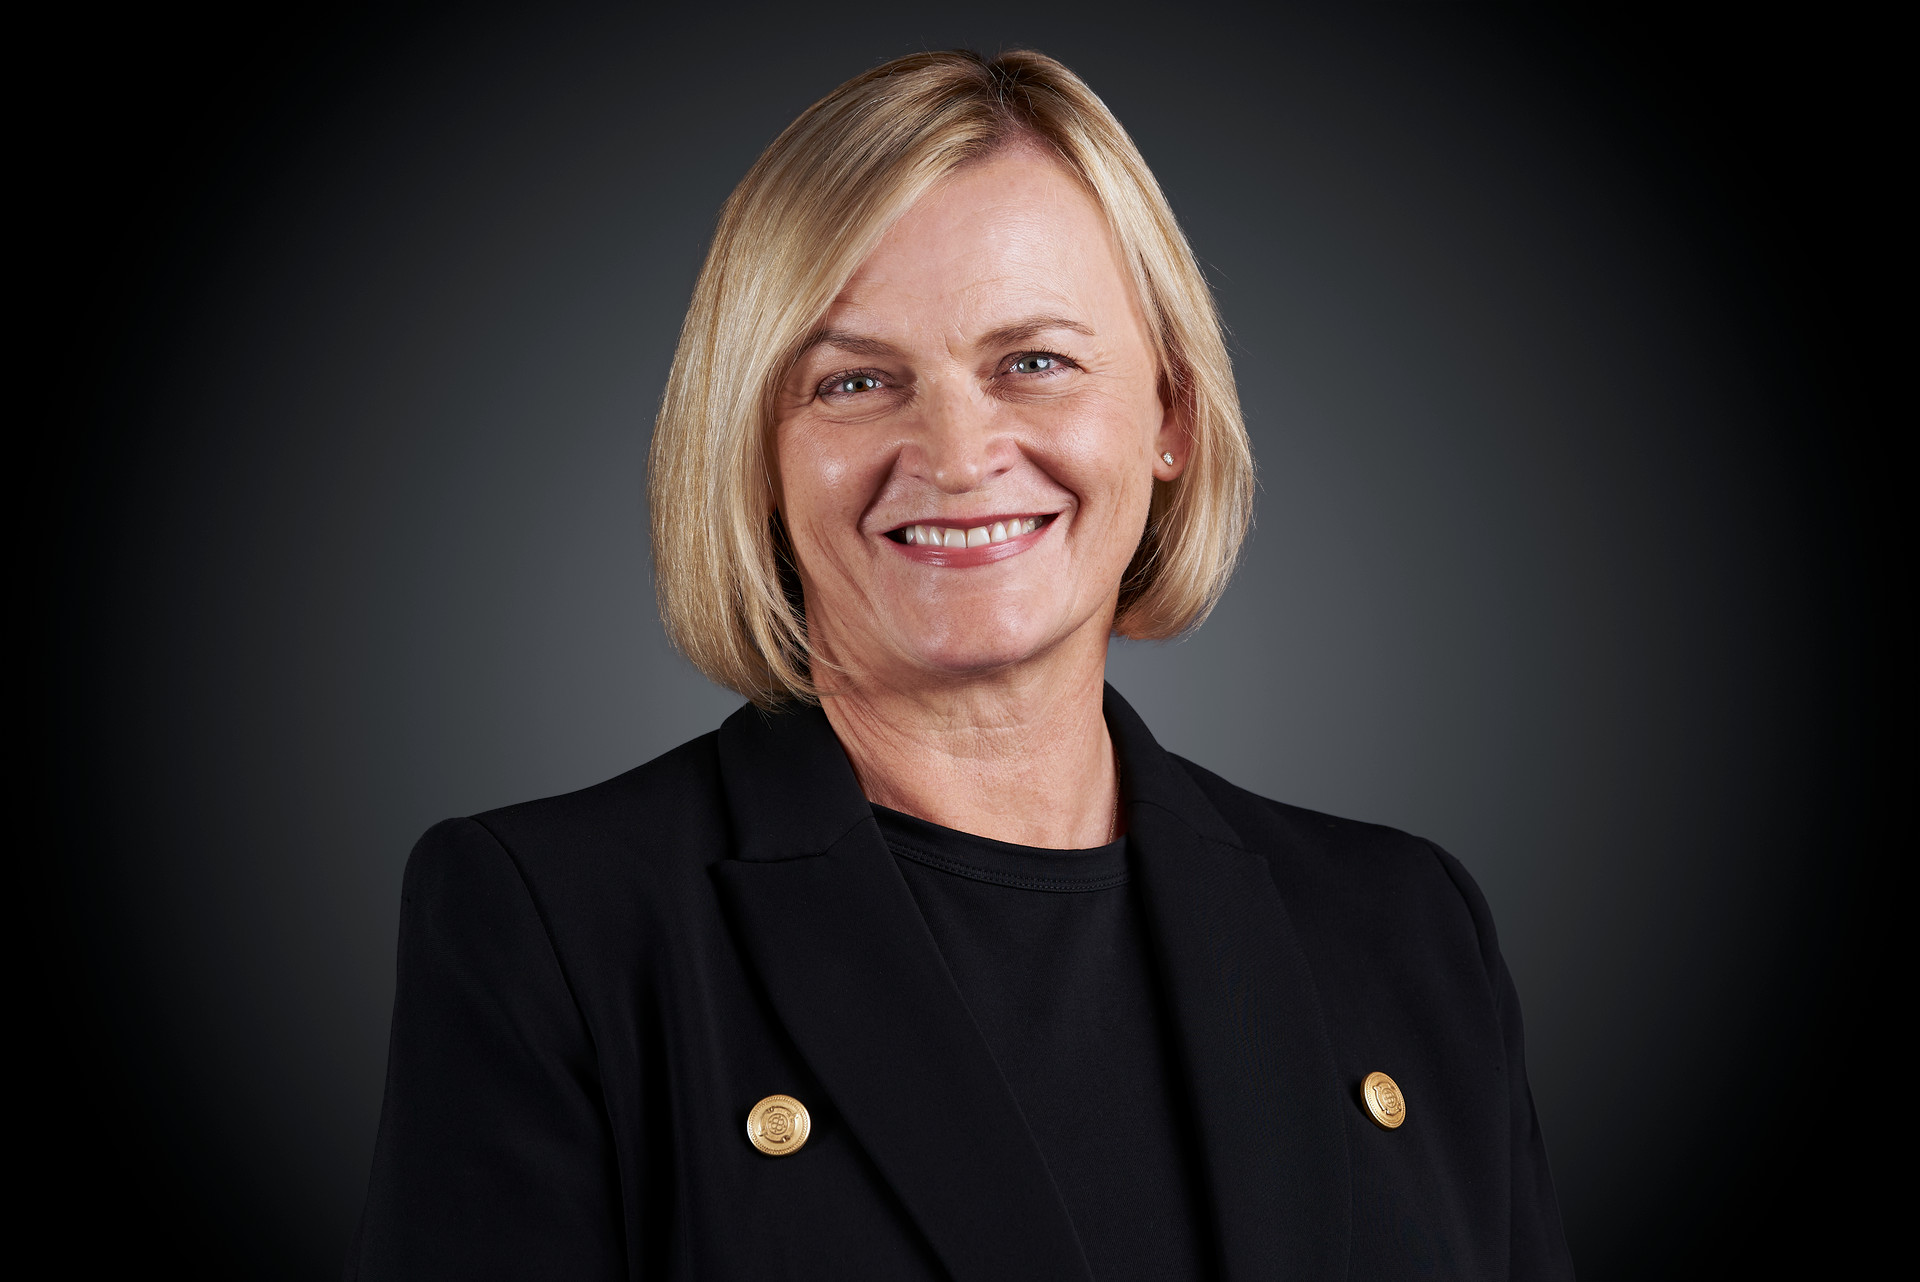 Female Executive CEO Headshot Profile Photography. By Orlandosydney.com